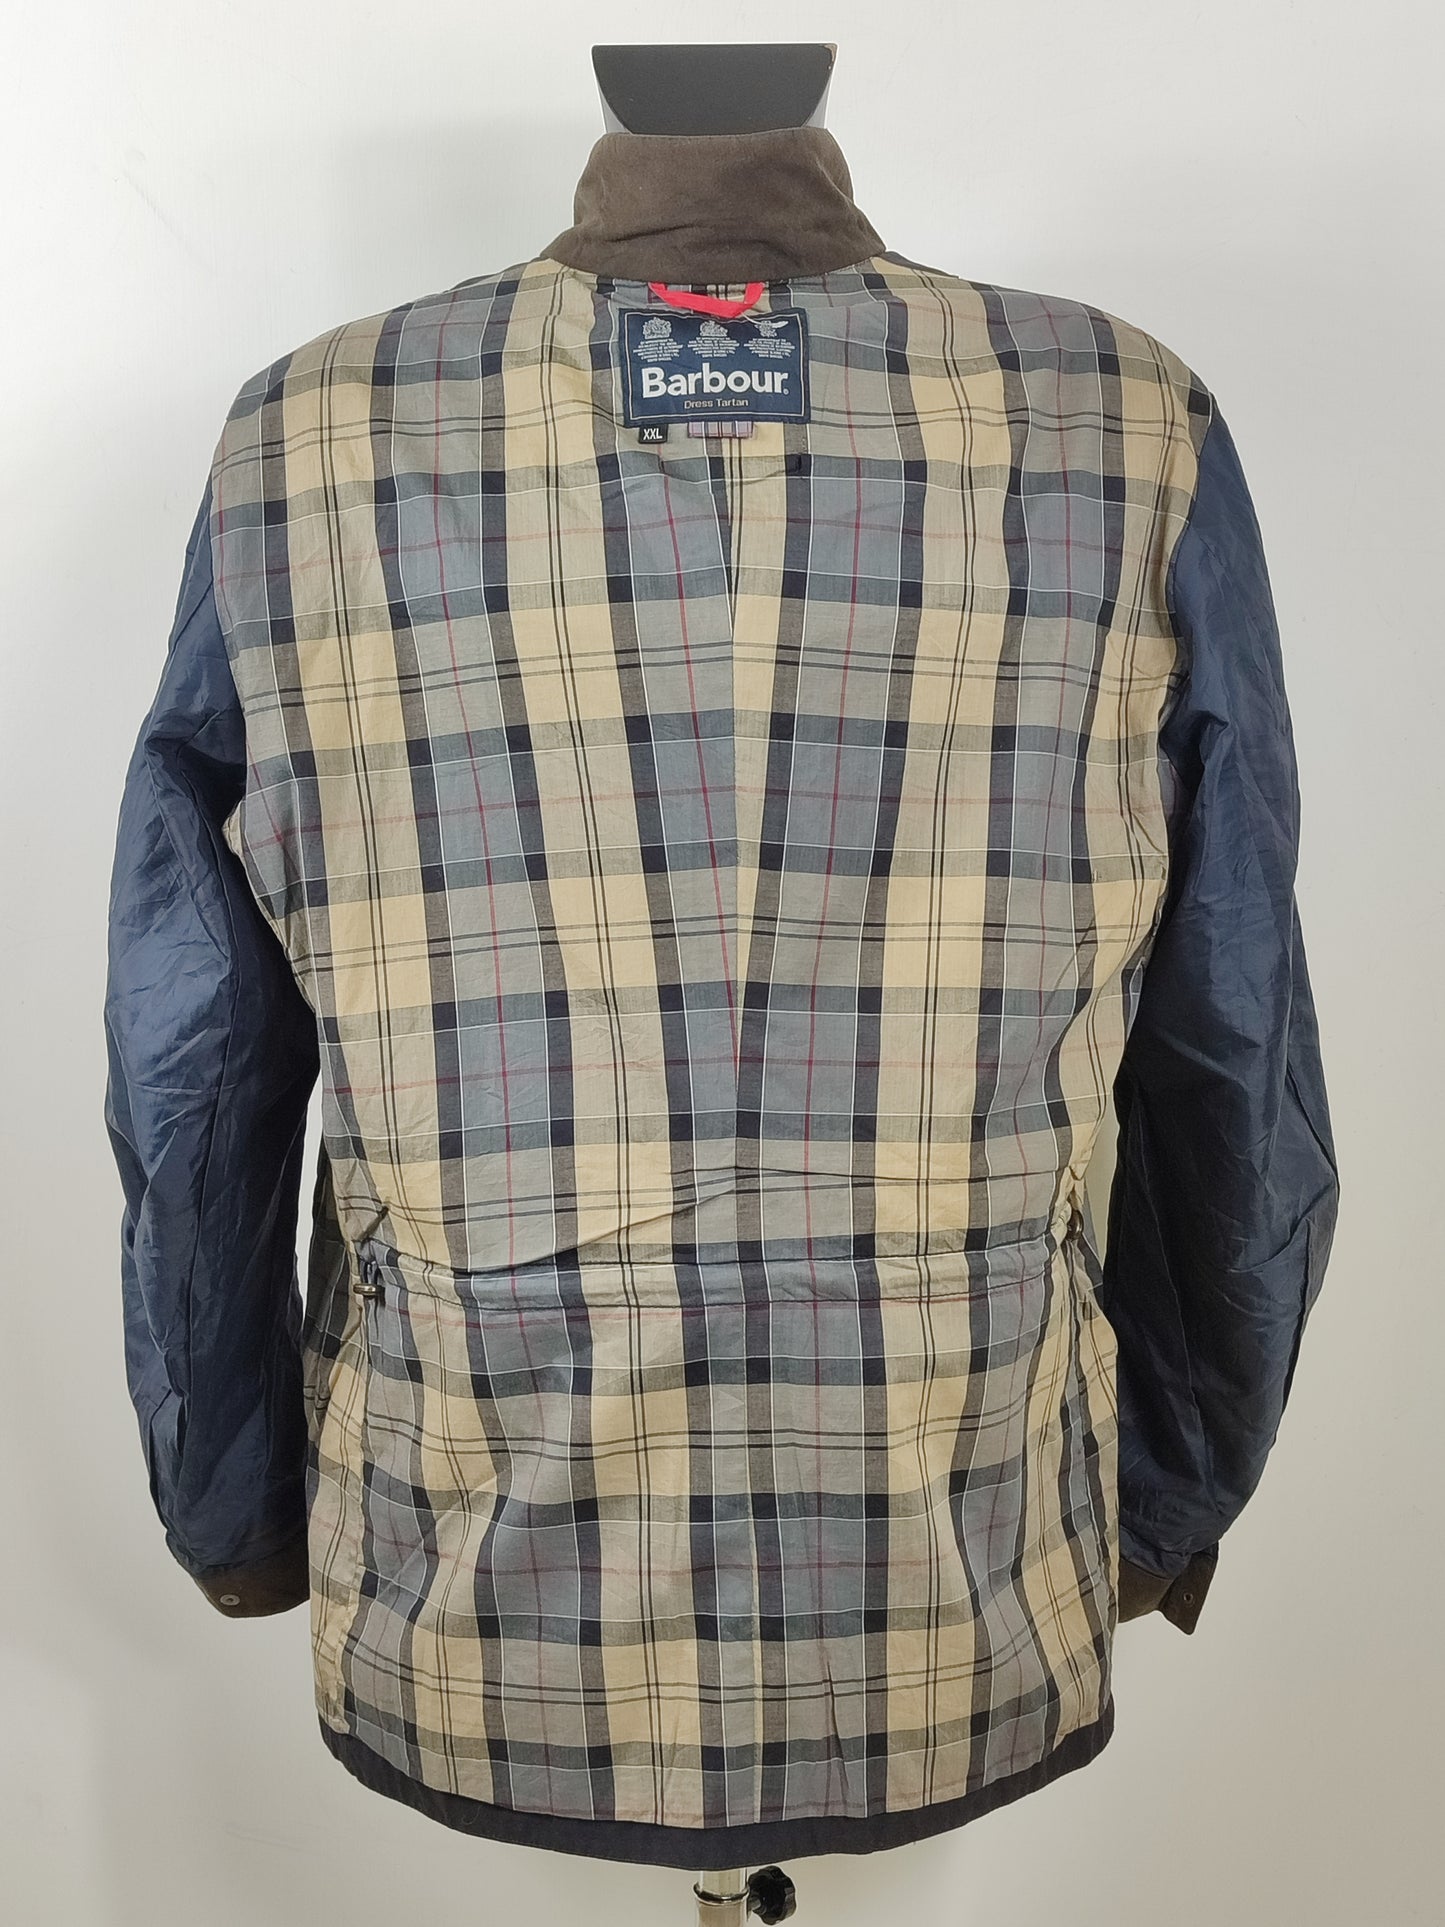 Giacca Uomo Barbour Kenmore Blu XXL- Man Navy Wax Kenmore Jacket Jacket Size XXL